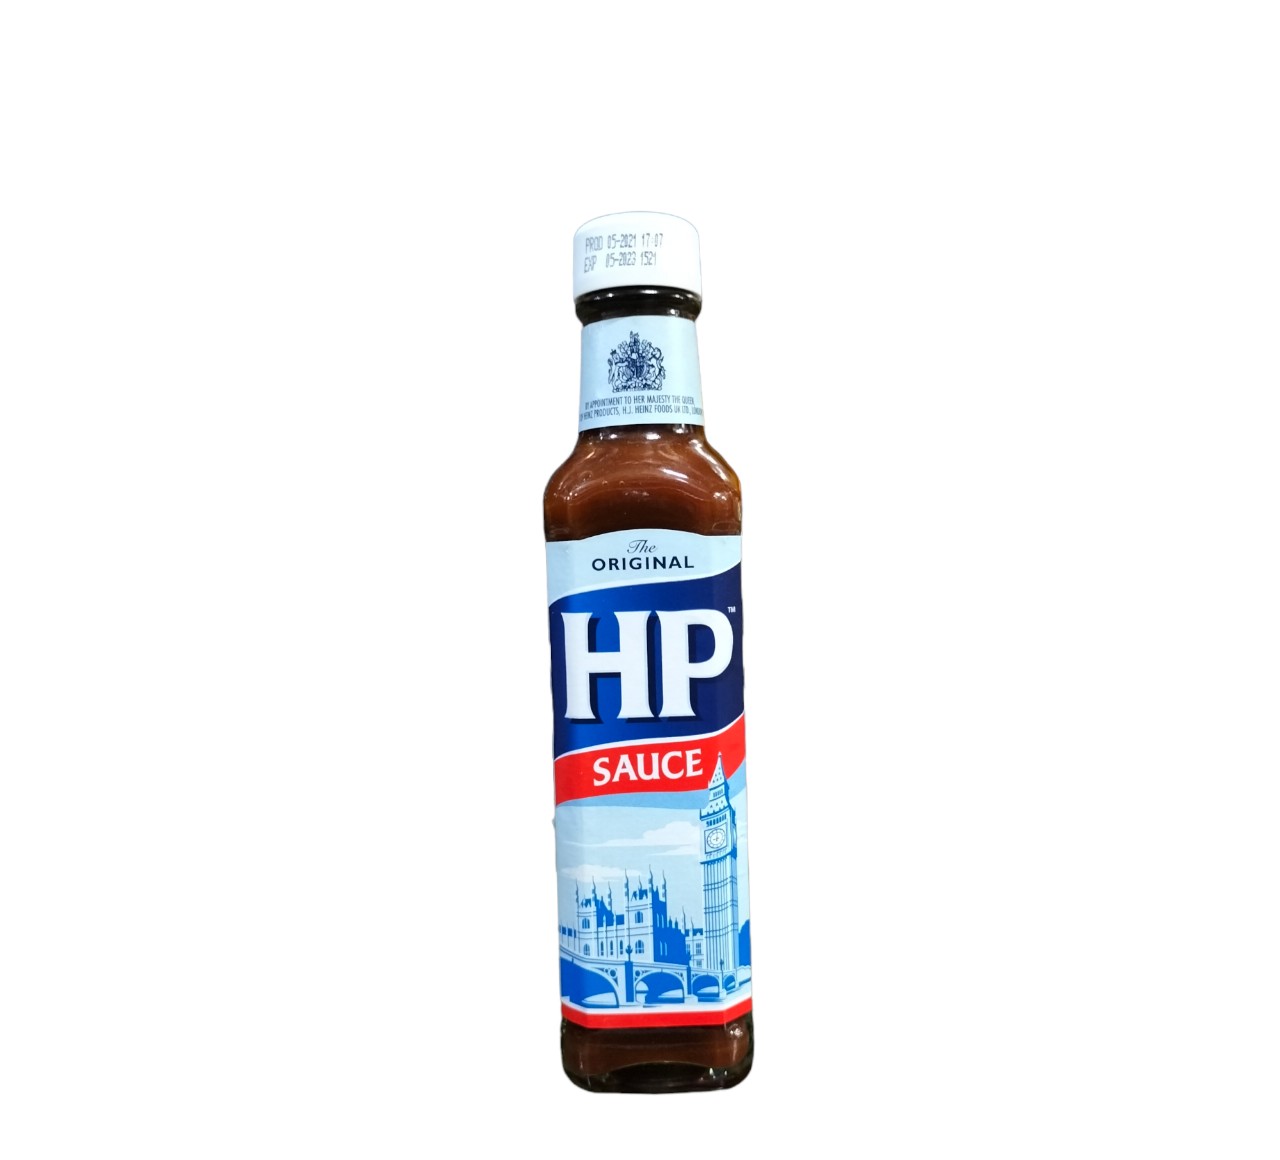 HP sauce The Original